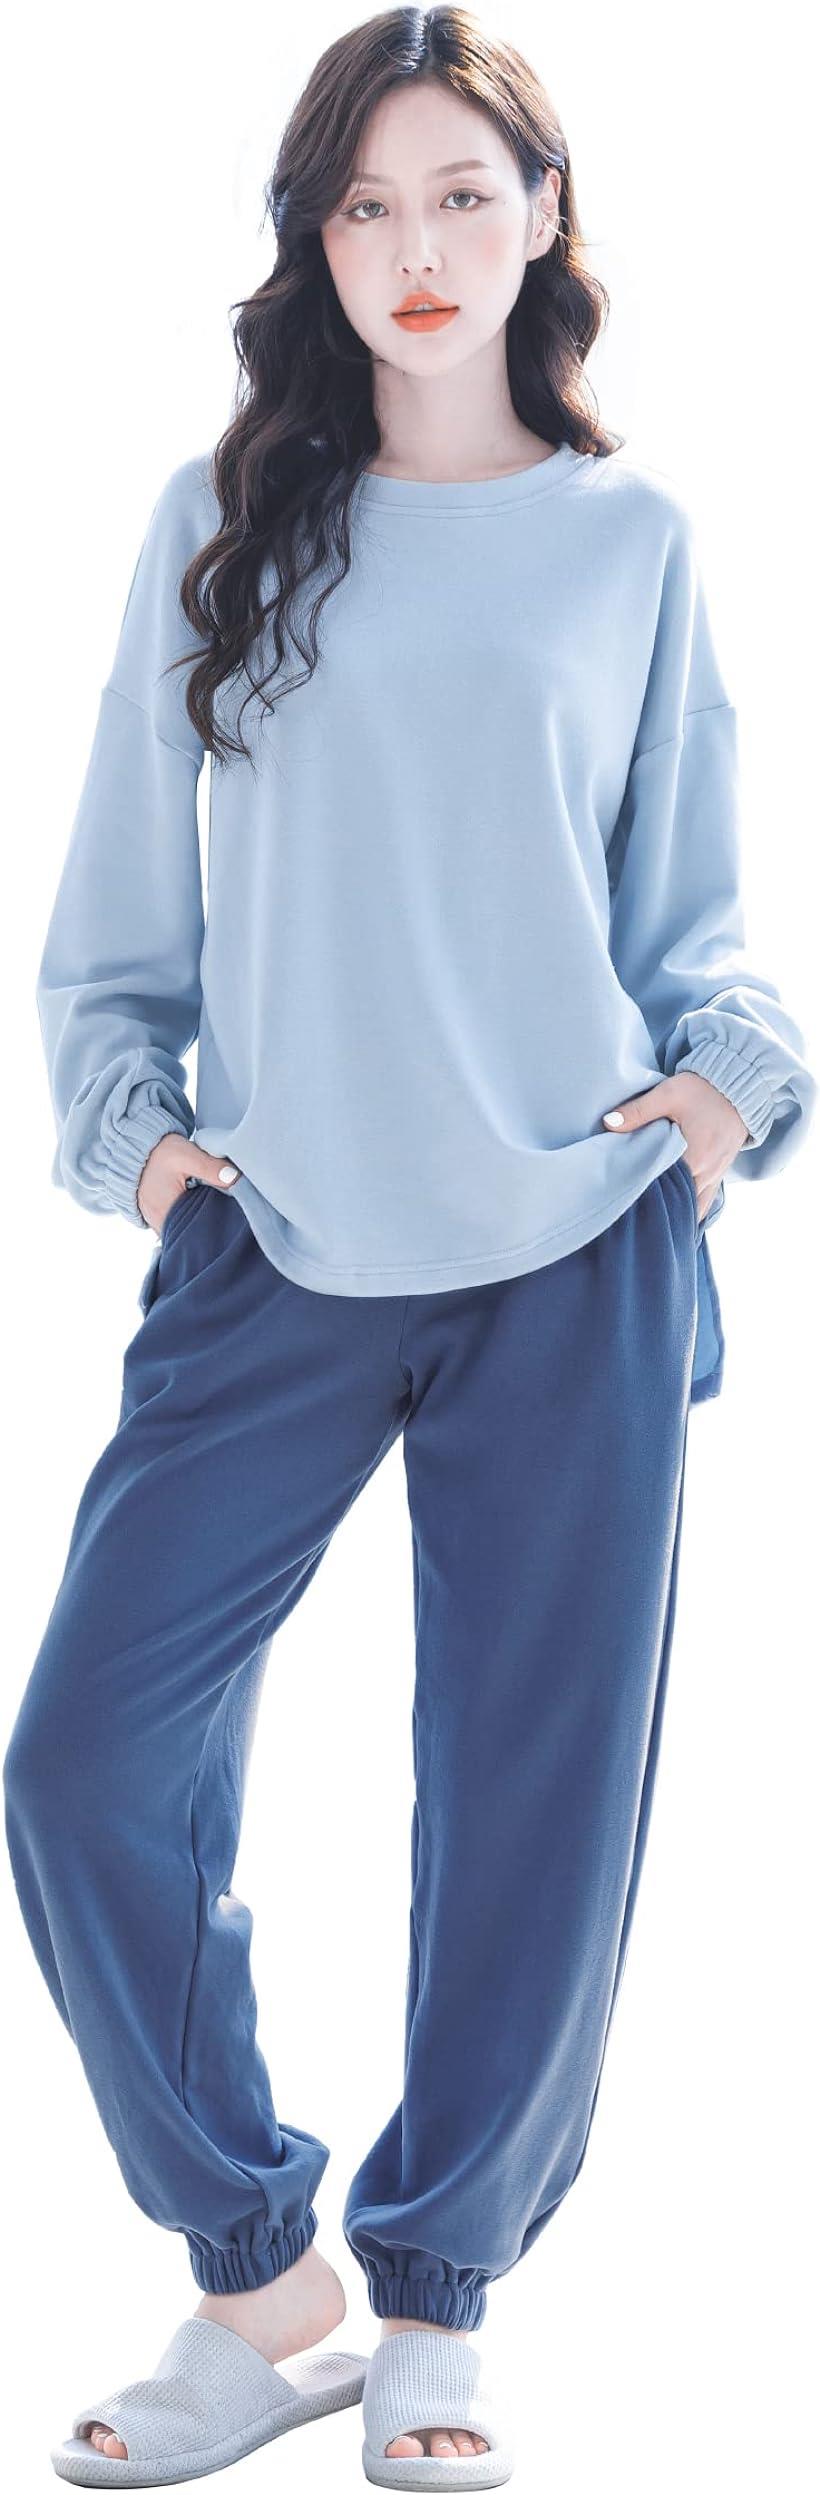 母の日 ルームウェア パジャマ 部屋着 レディース 上下セット 長袖 暖かい 可愛い 春 秋 冬 肌に優しい ブルー( 502_ブルー, XL)